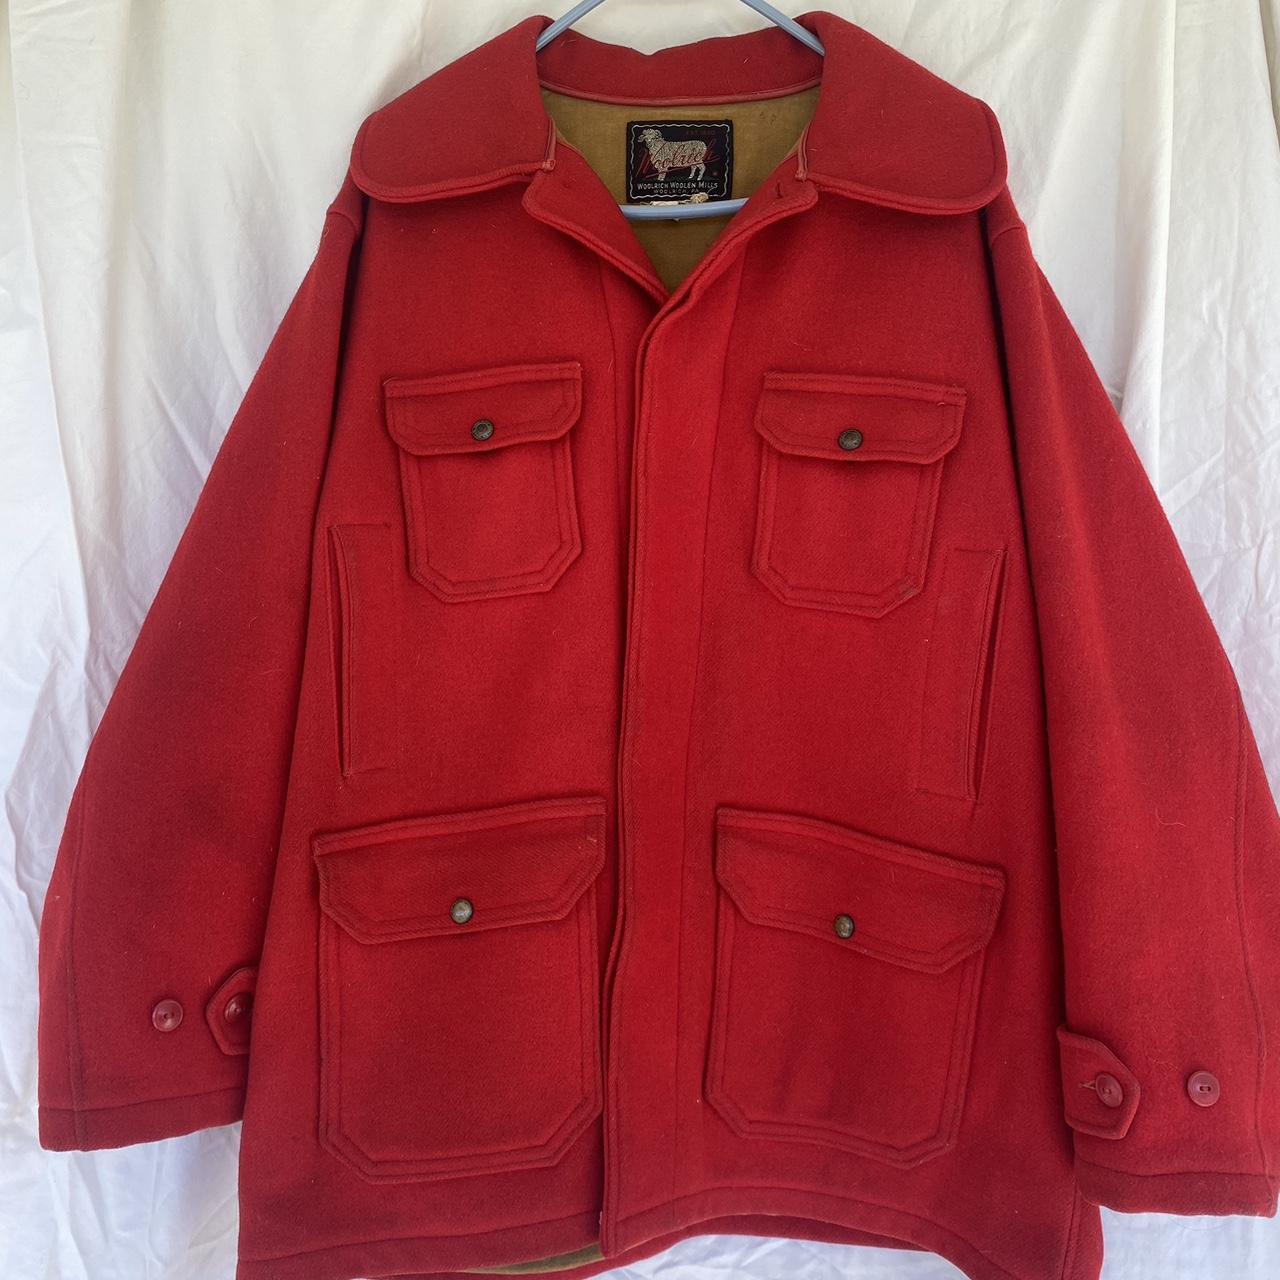 Woolrich woolen mills jacket. Vintage red hunting - Depop